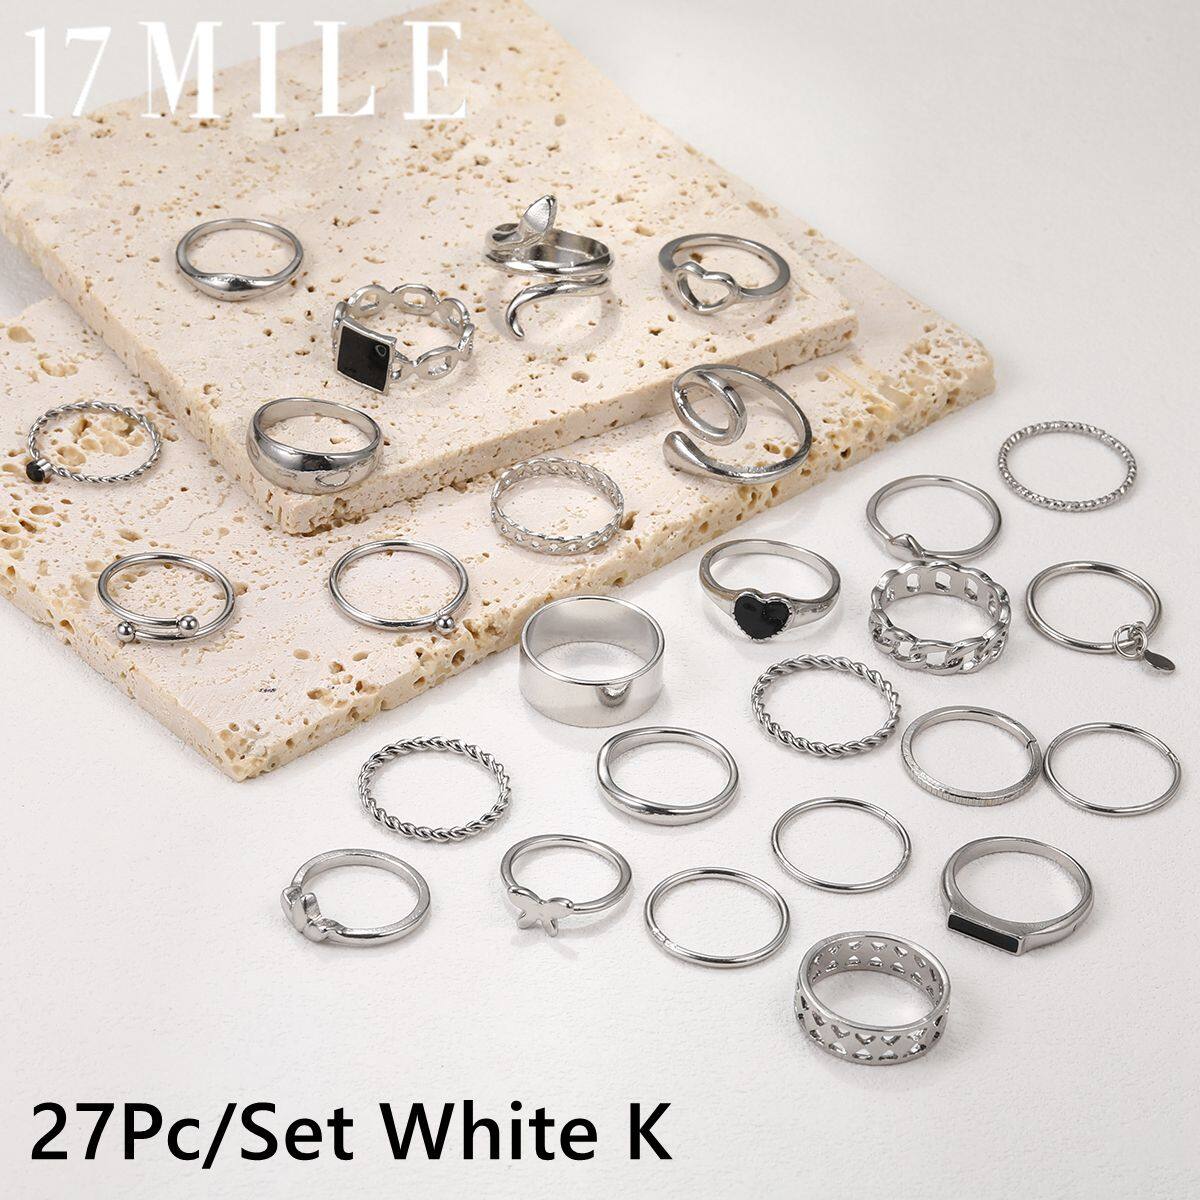 17 MILE 27Pc Set of White K Black Square Heart Snake Ring for Women